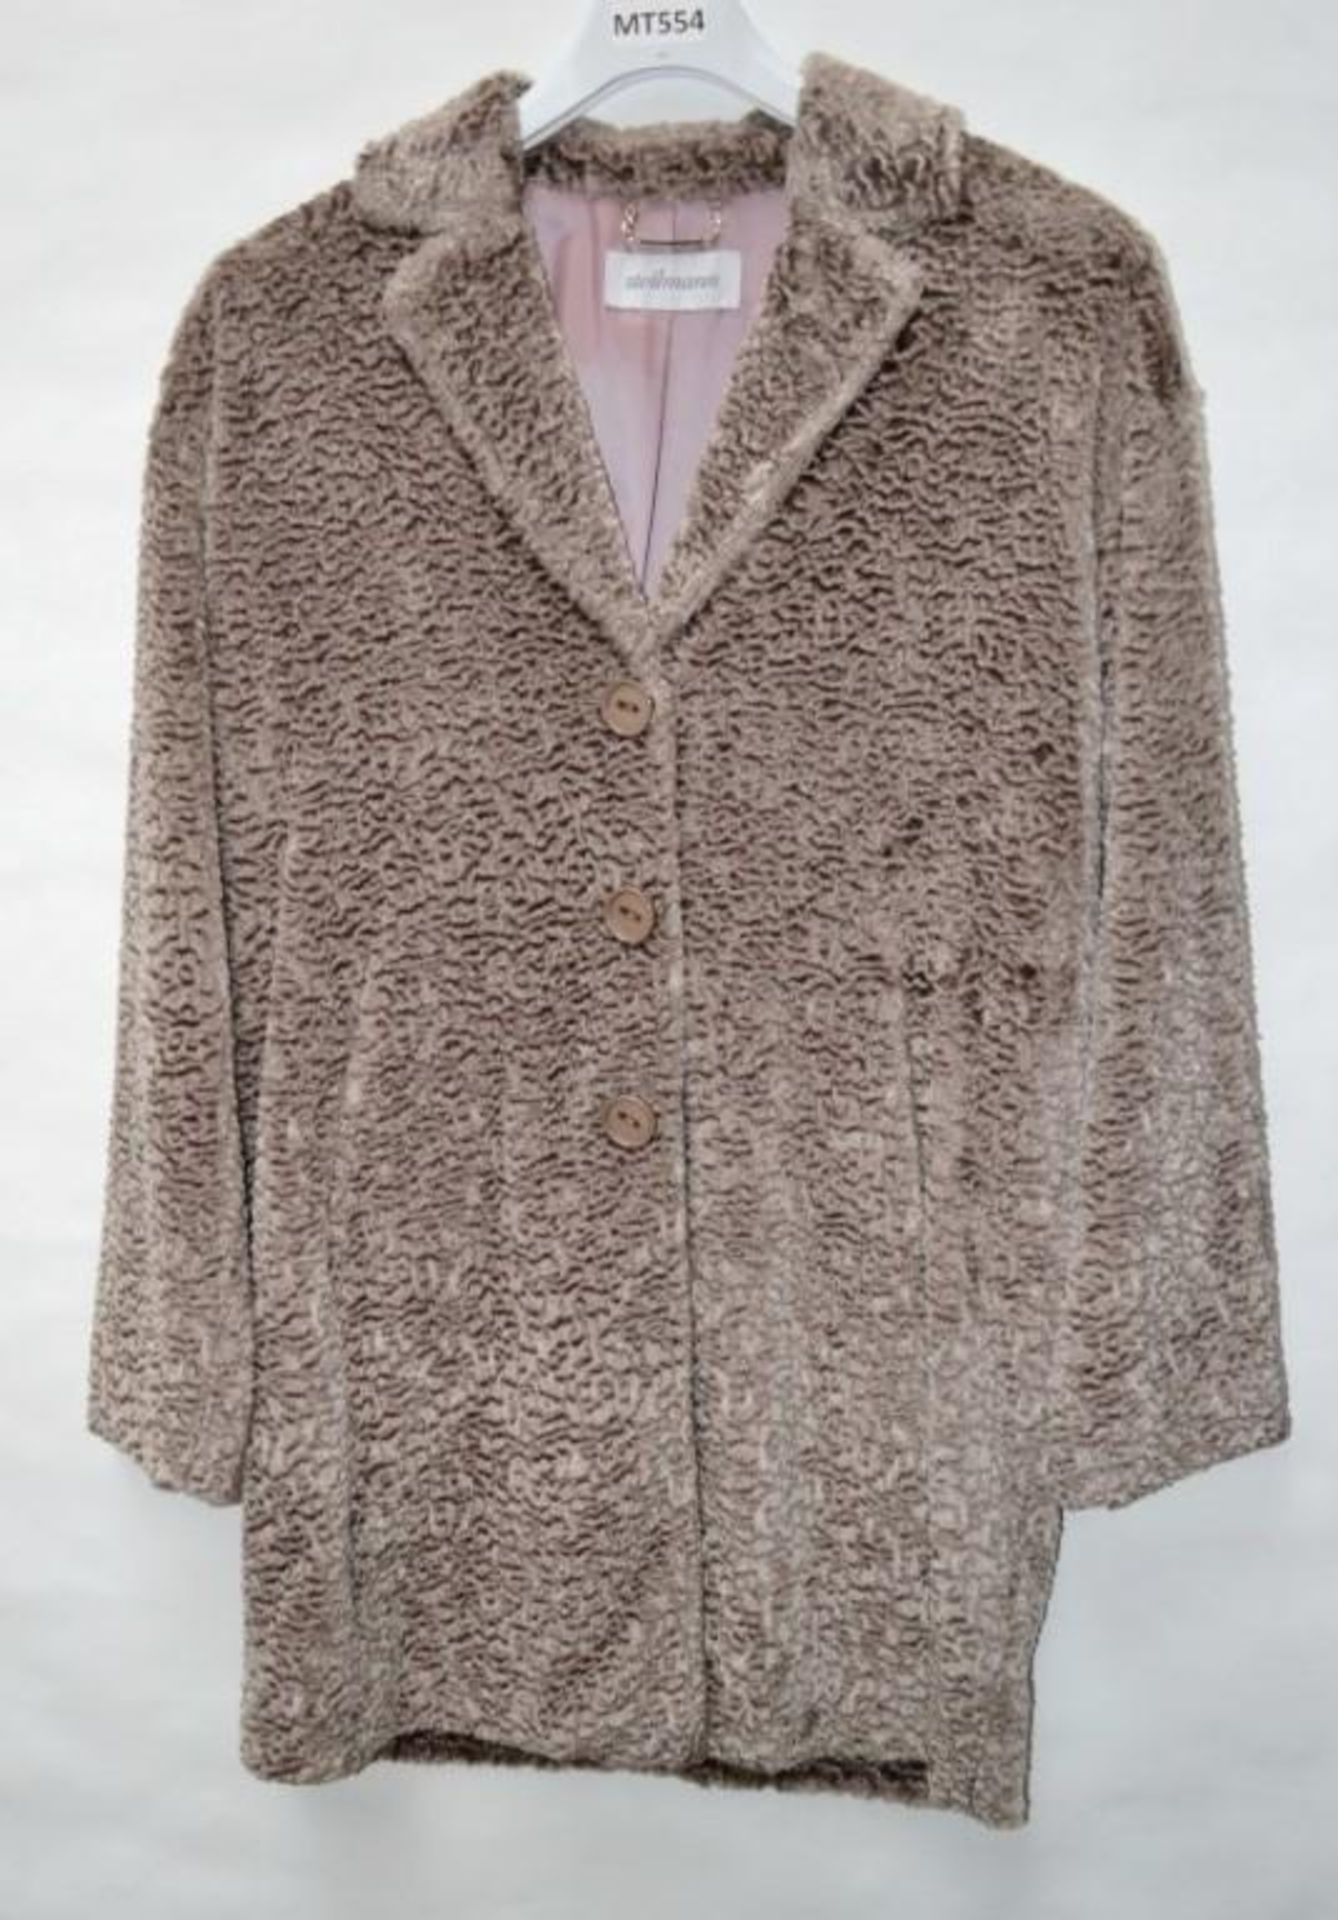 1 x Steilmann Womens Vintage-Style Faux Fur Winter Coat - Colour: Mocha - Size 12 - CL210 - New Samp